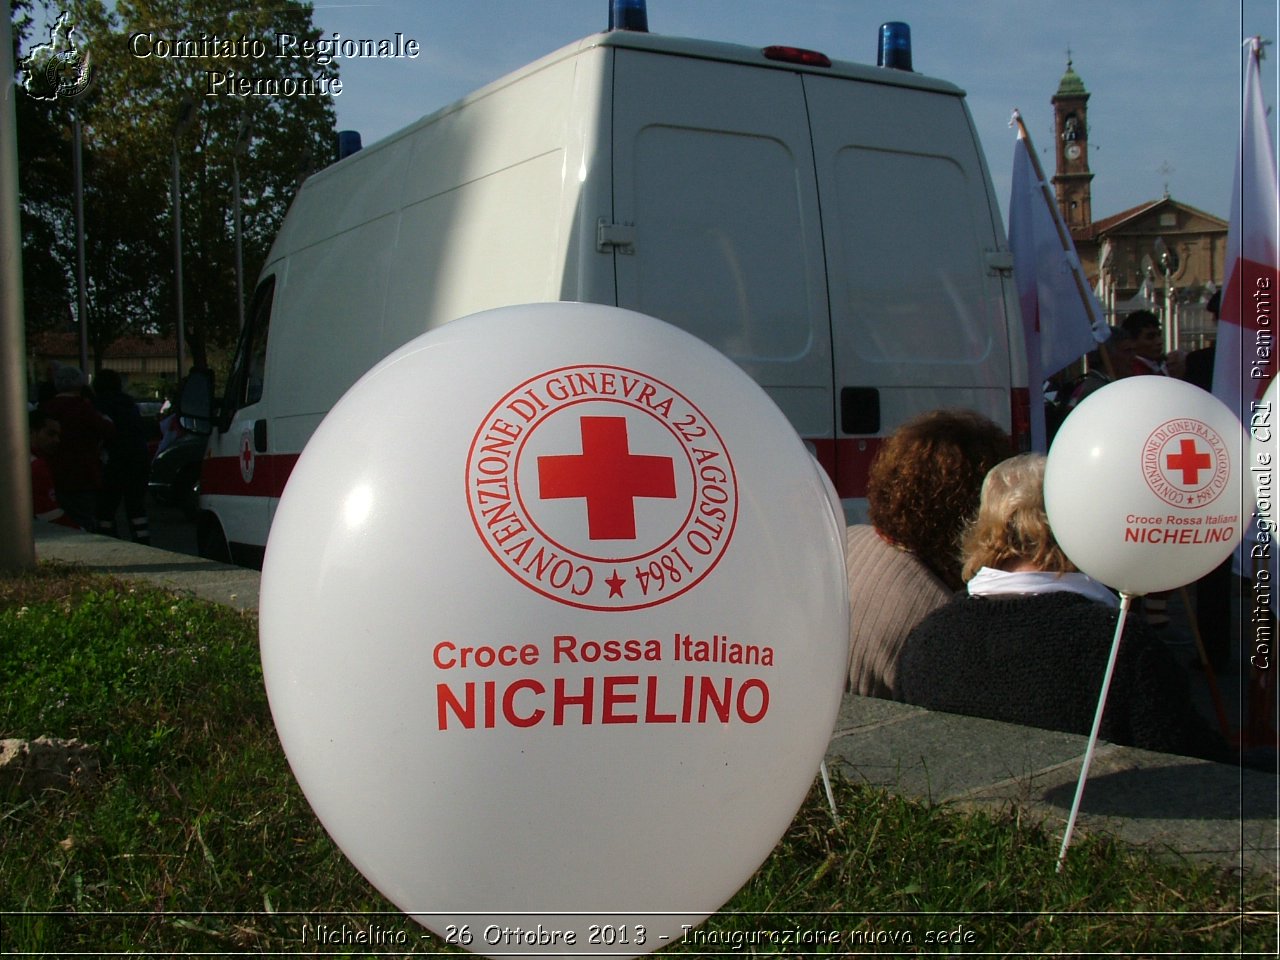 Nichelino - 26 Ottobre 2013 - Inaugurazione nuova sede - Comitato Regionale del Piemonte